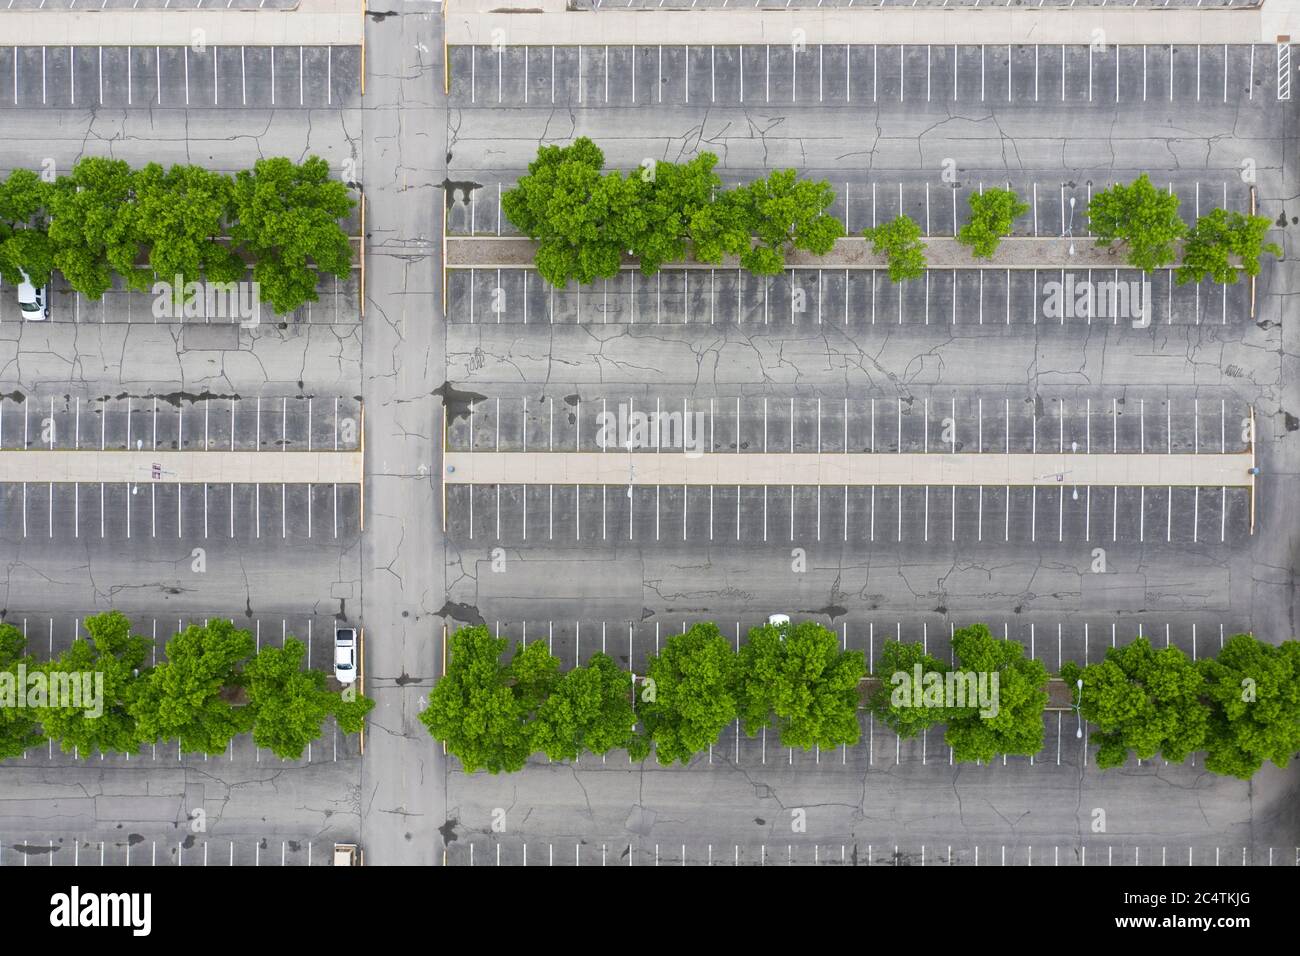 Vue abstraite de drone regardant vers le bas sur un stationnement en asphalte presque vide avec des rangées d'arbres Banque D'Images